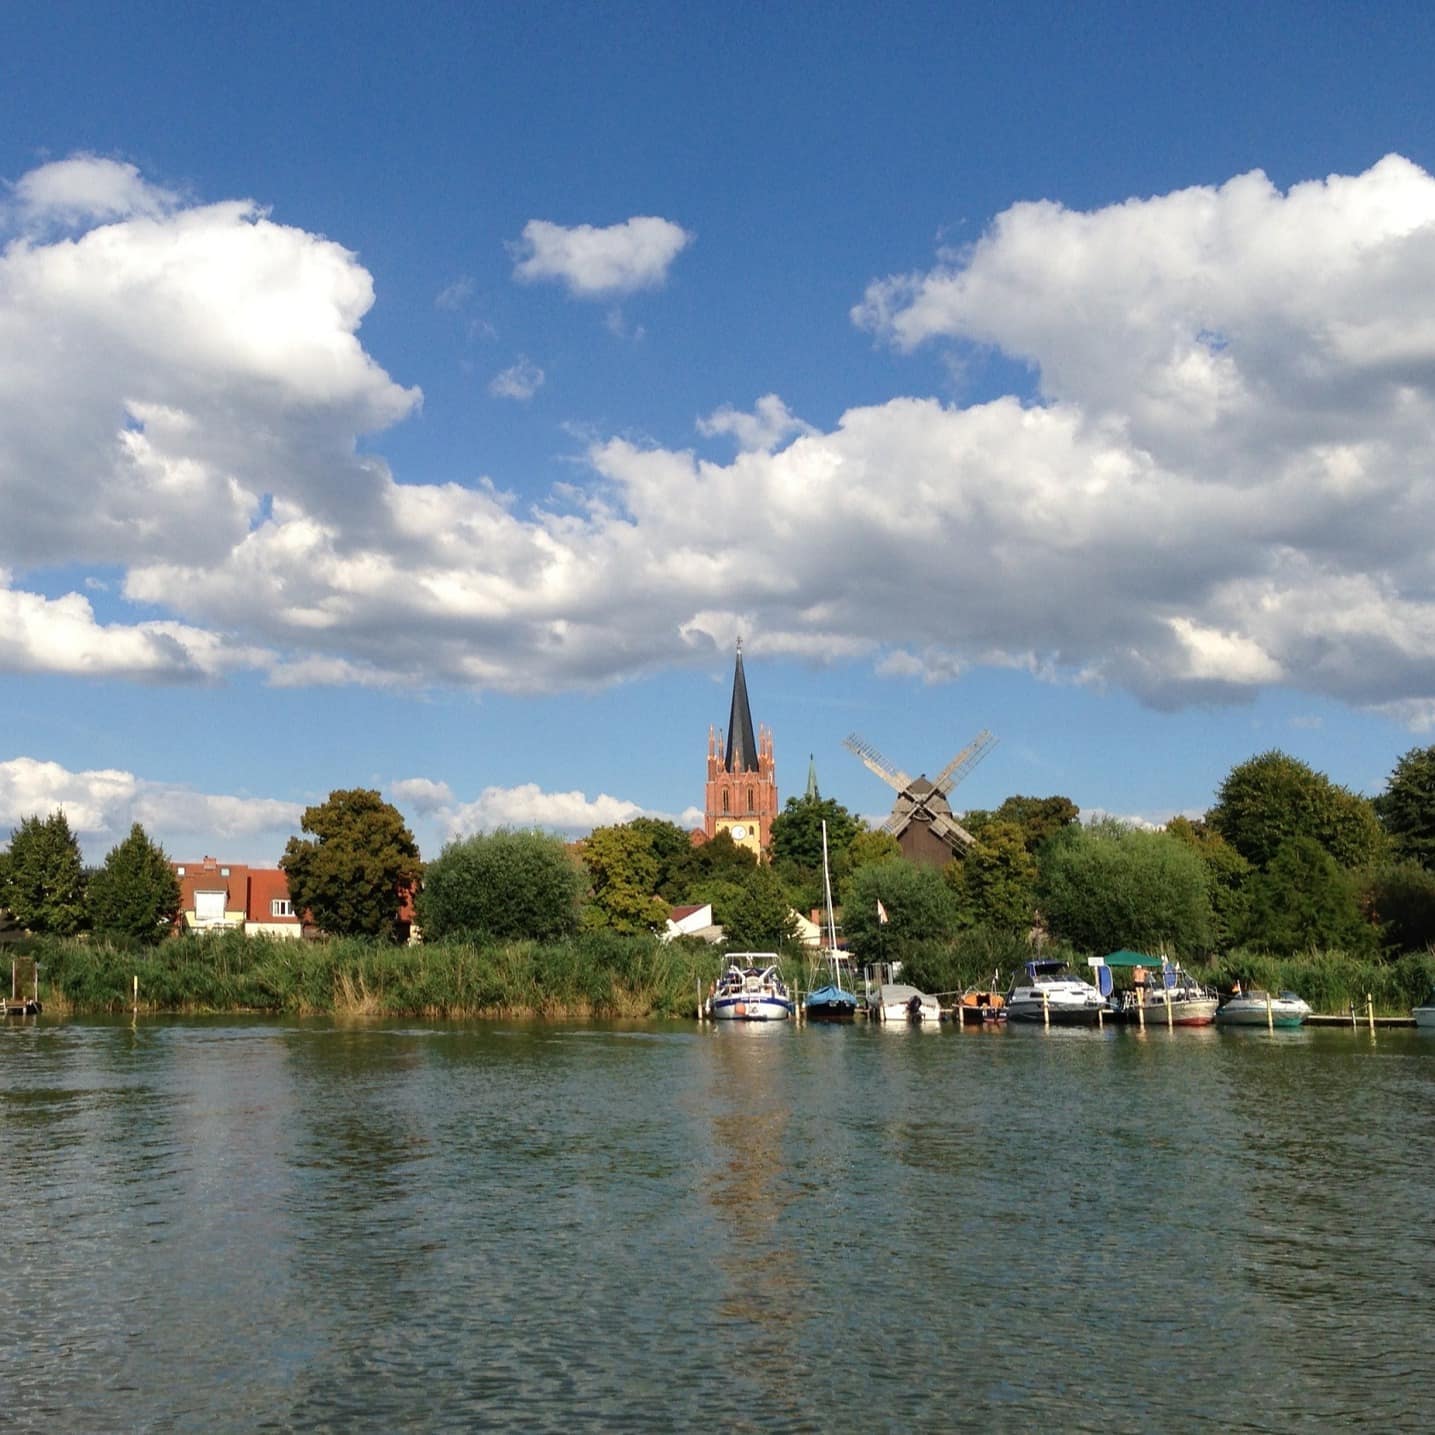 Blick über das Wasser in Brandenburg, Angelboote und Häuser sind zu sehen